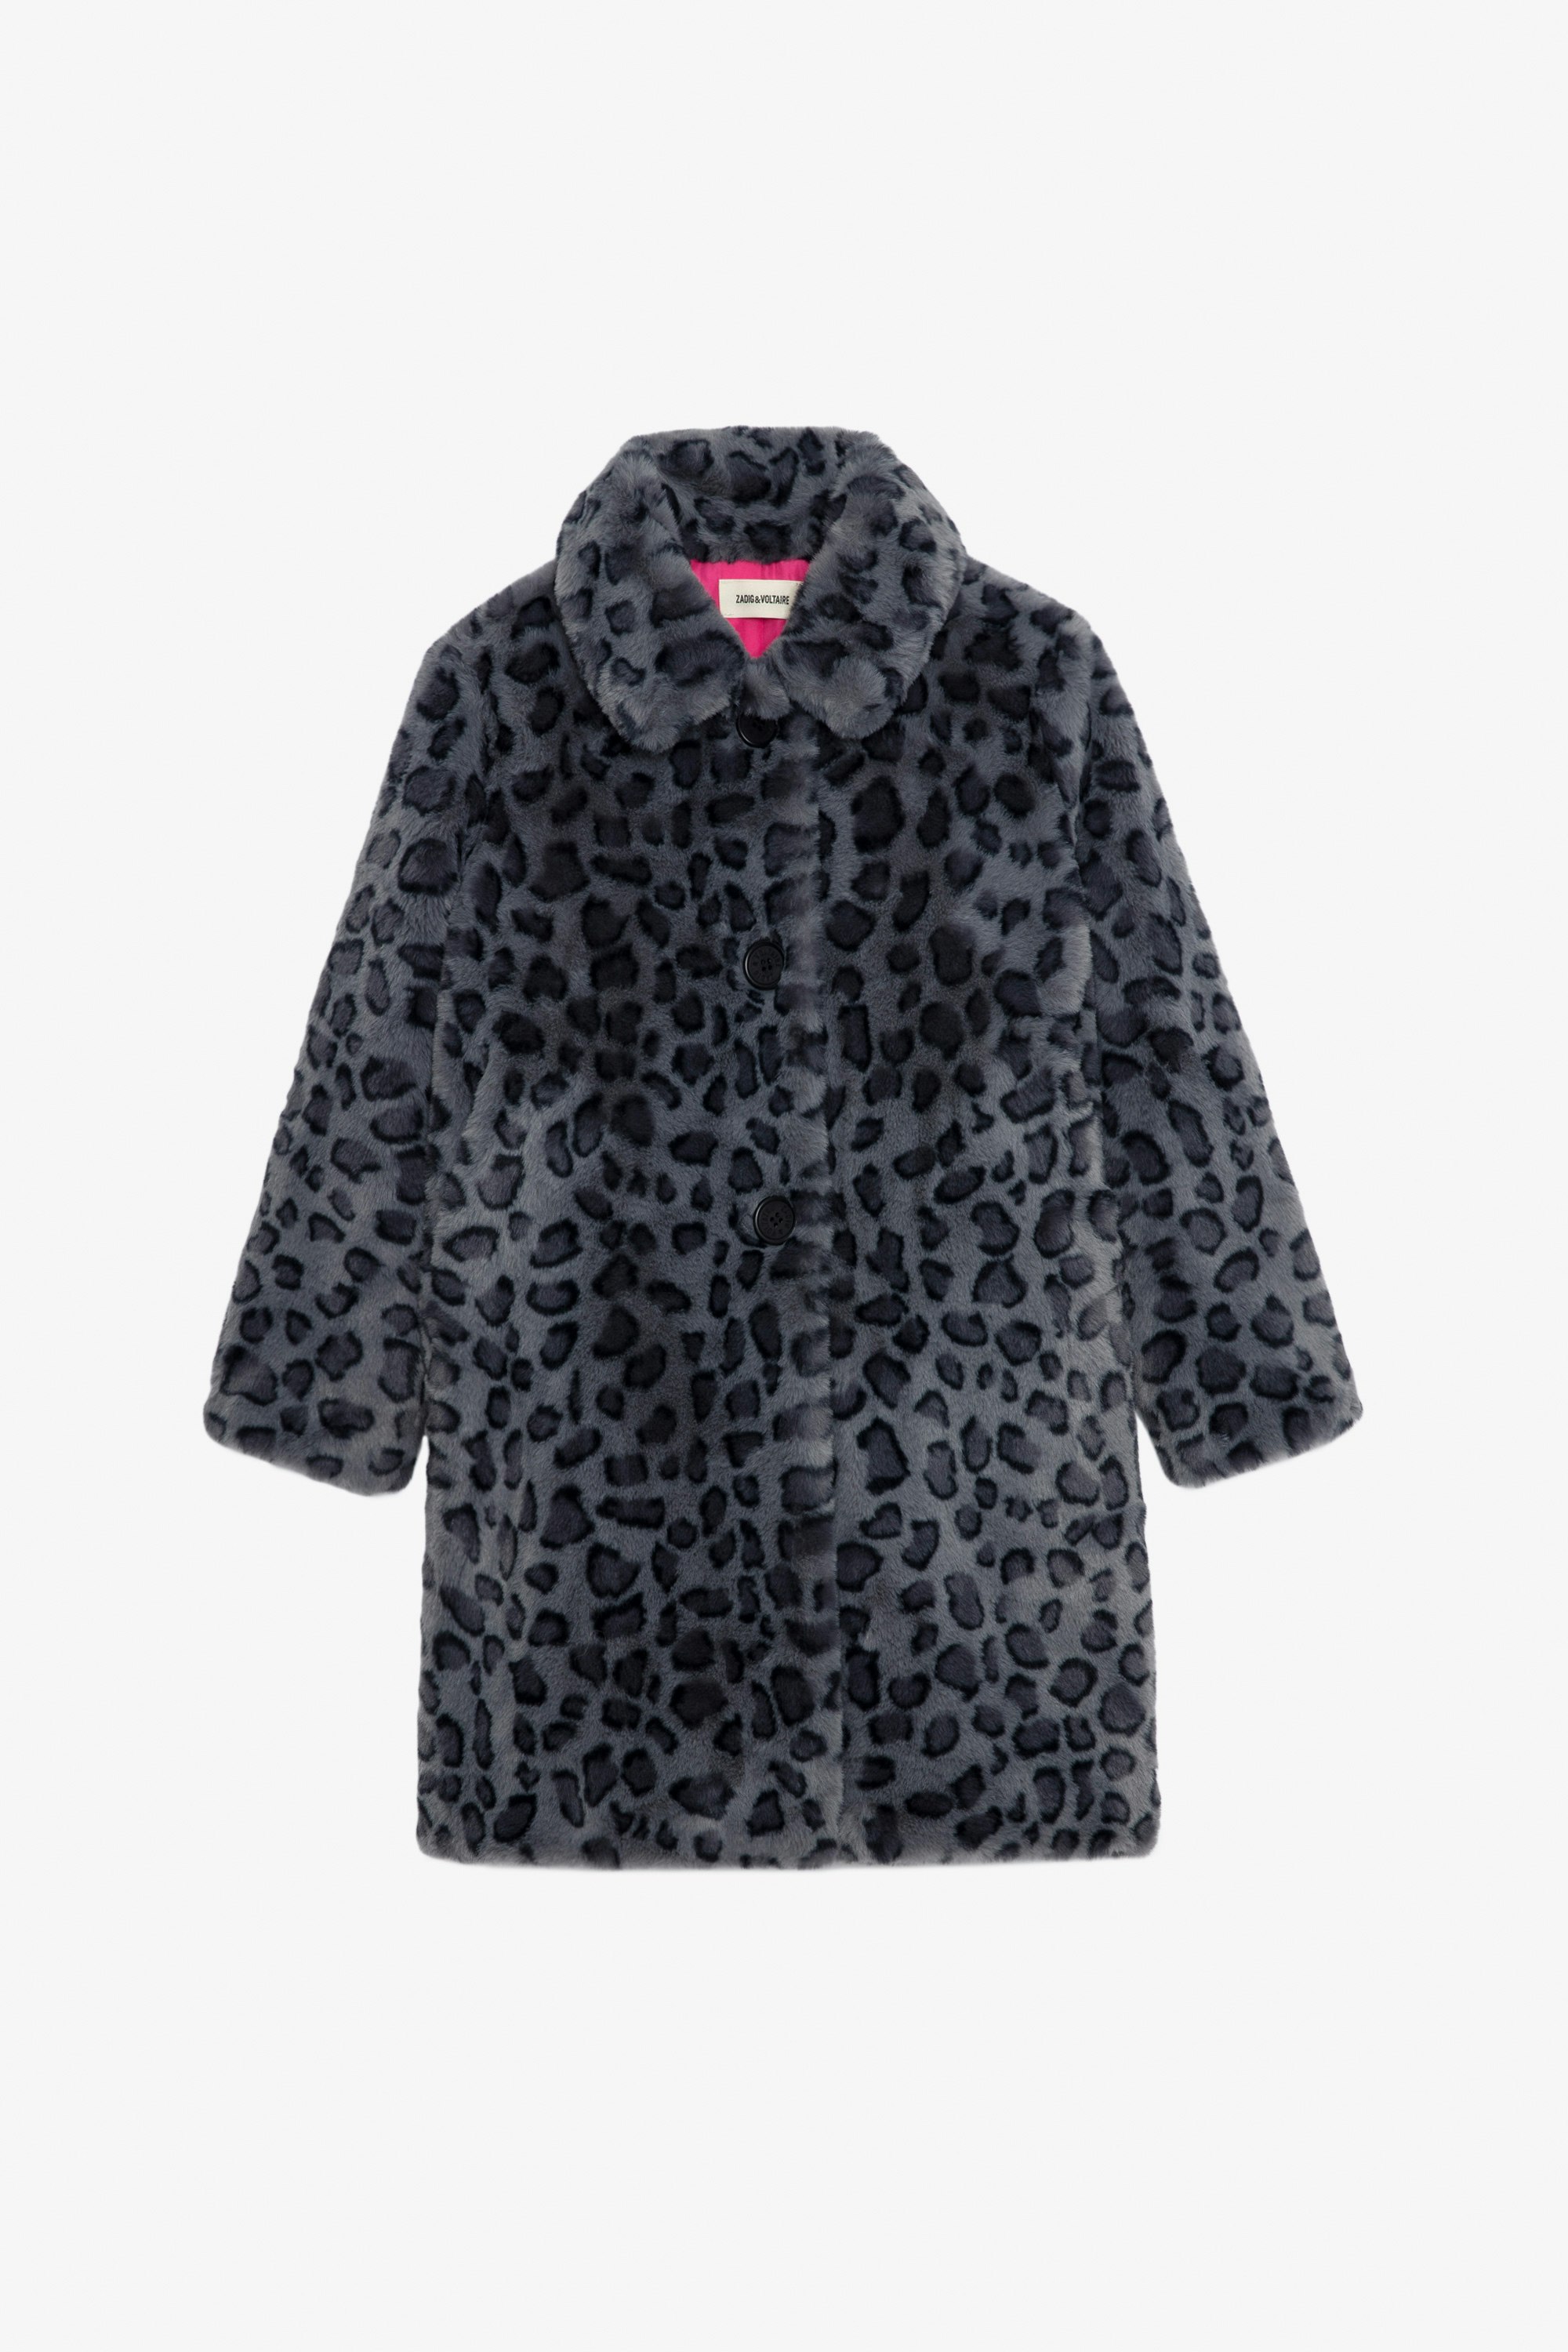 Abrigo Madeleine Niña Abrigo negro de forro polar estampado de leopardo con forro en contraste para niña.